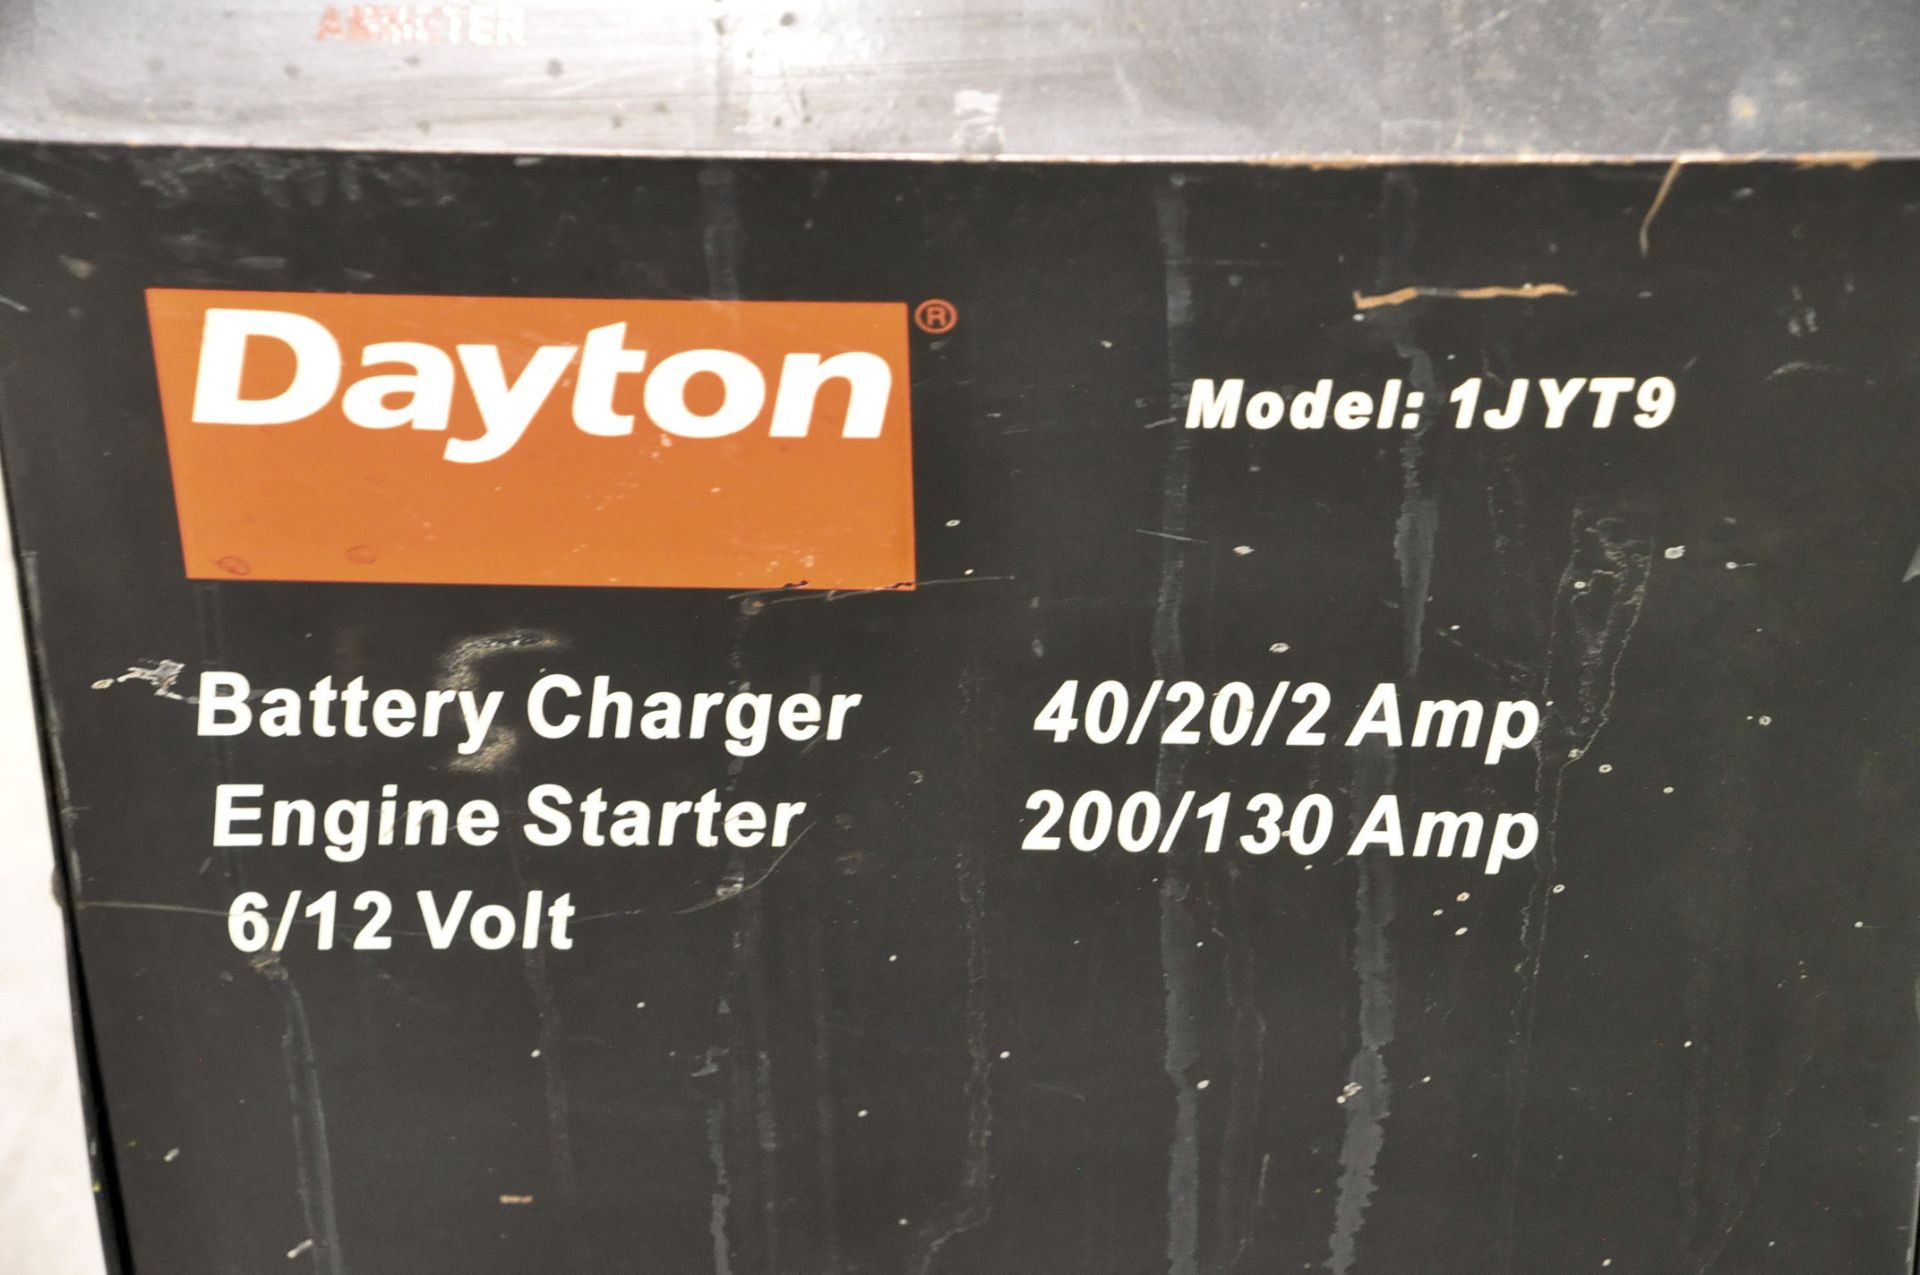 Dayton Model 1JYT9, 6/12 Volt, 40/20/2 Battery Charger, 200/130 Amp Engine Starter - Image 2 of 2